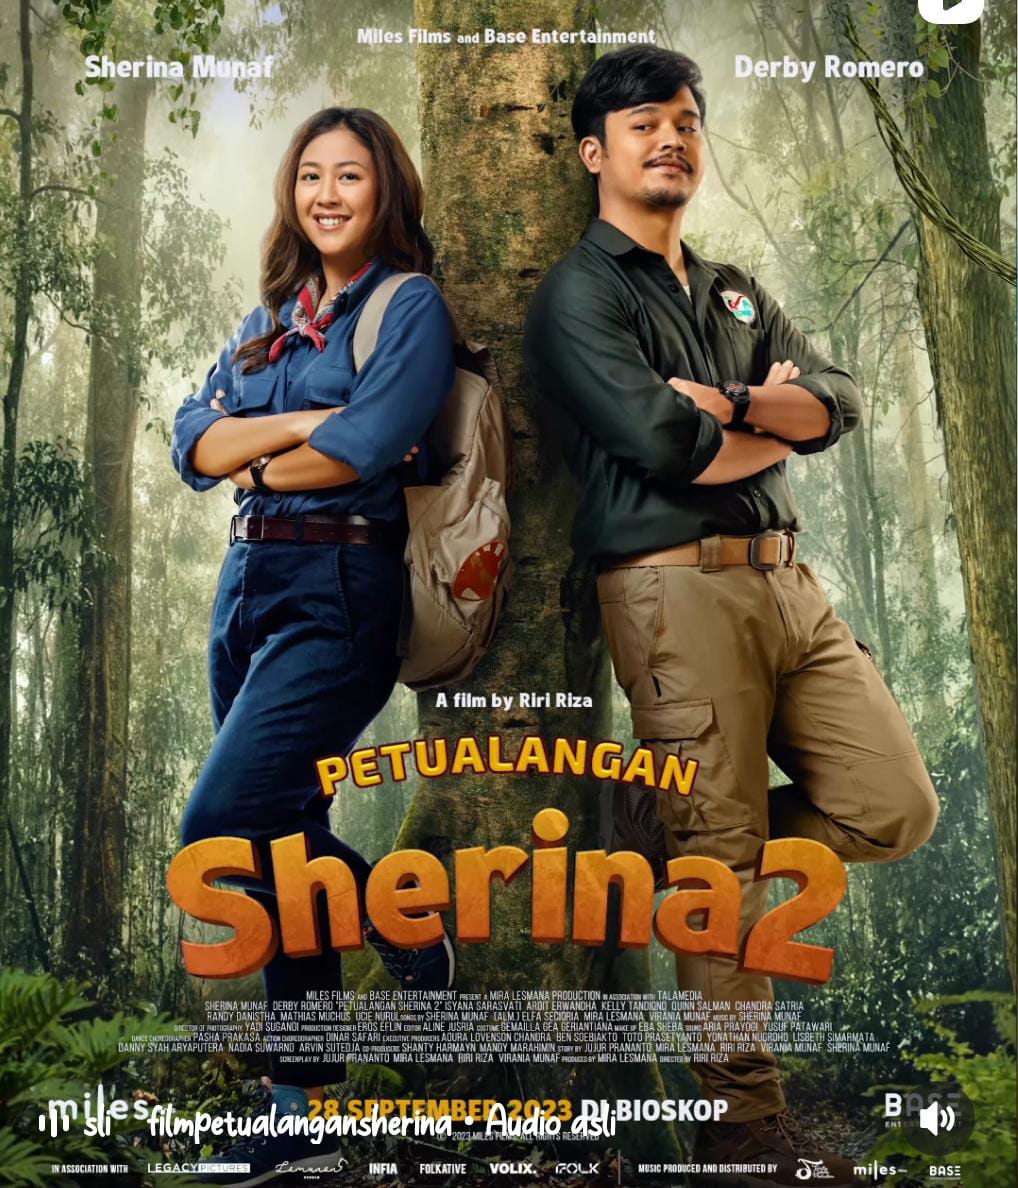 Film Petualangan Sherina 2 Akan Tampilkan Keindahan Hutan Kalimantan, Simak Selengkapnya